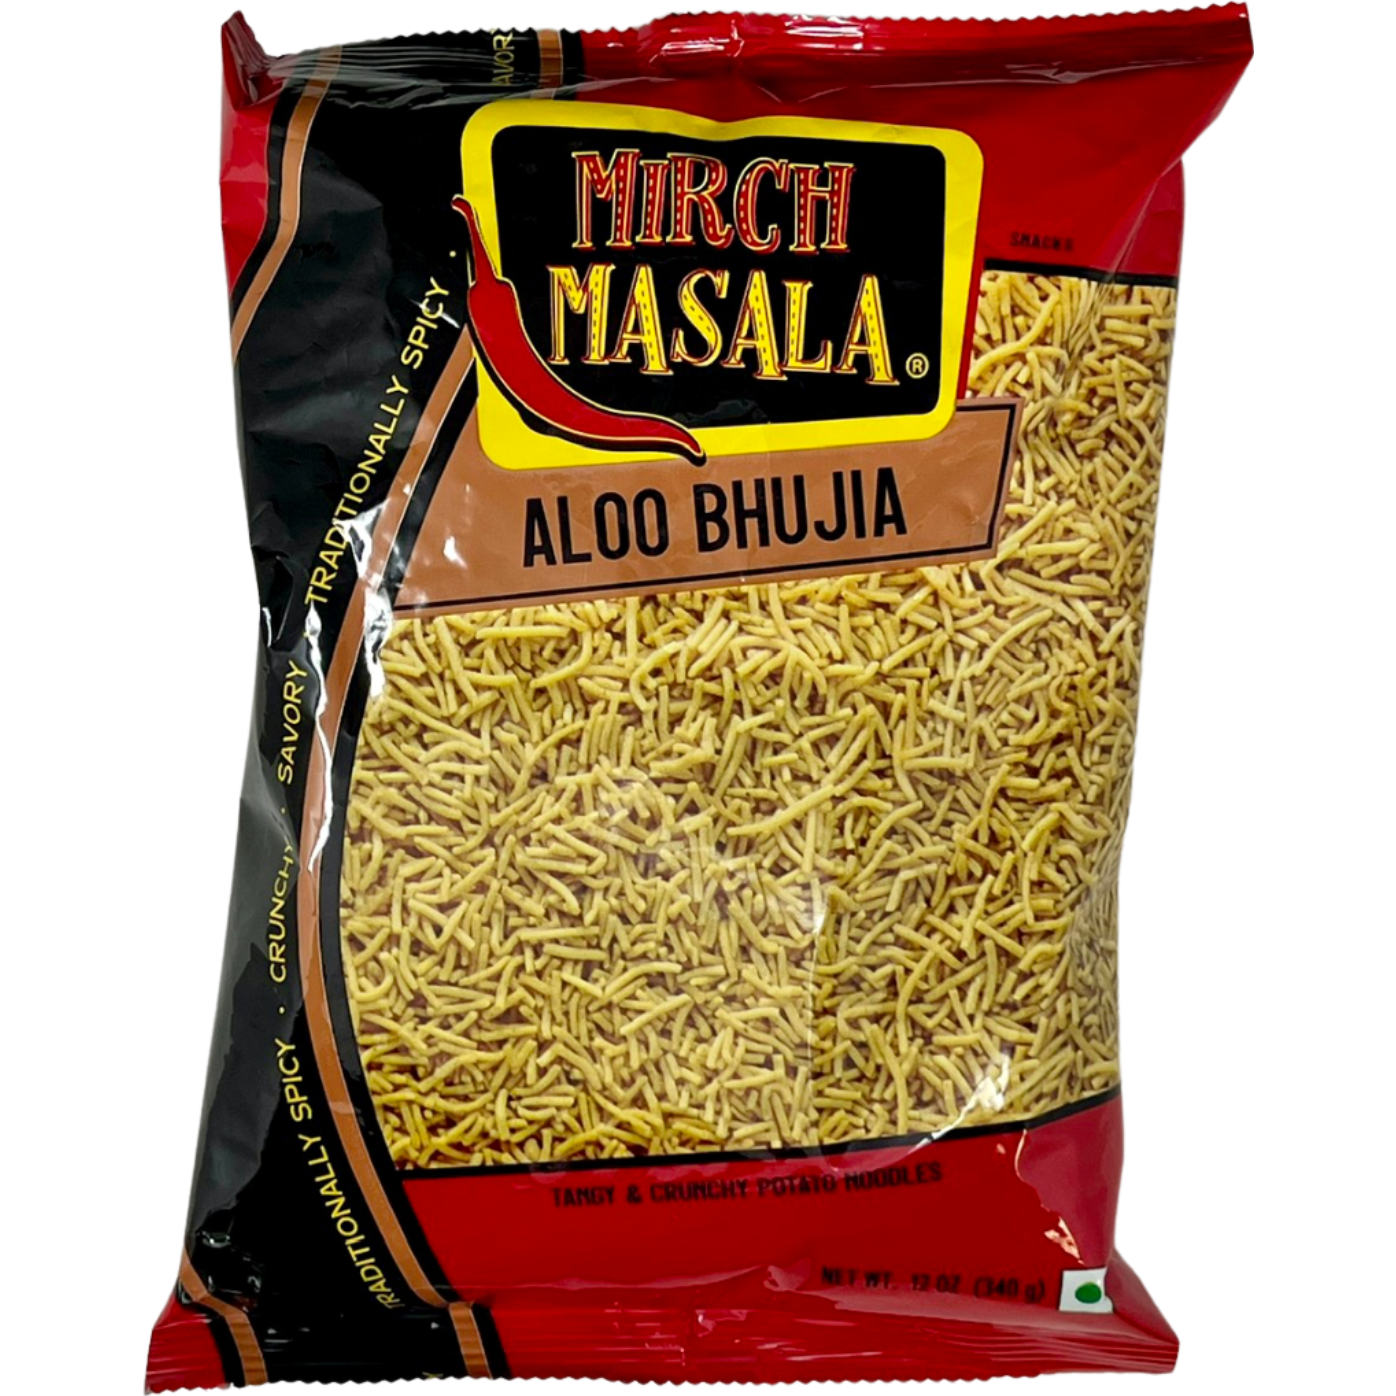 Pack of 3 - Mirch Masala Aloo Bhujia - 12 Oz (340 Gm)